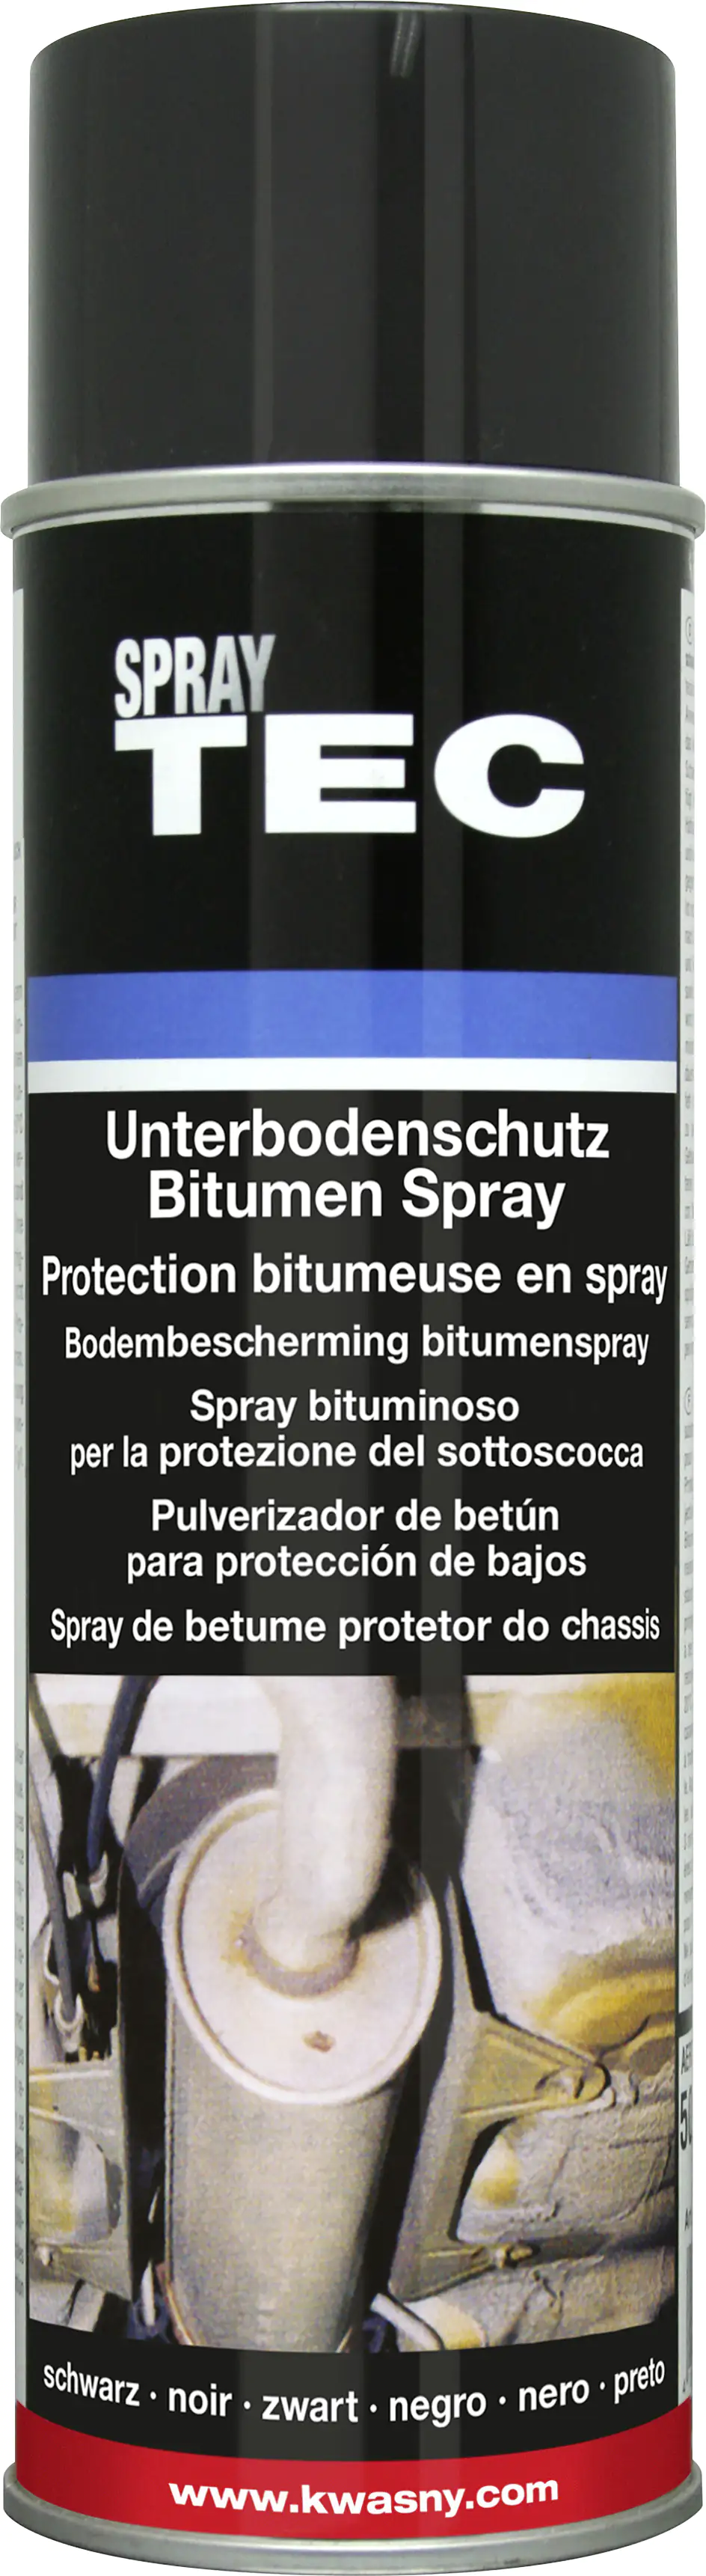 SprayTEC Unterbodenschutz Bitumen schwarz 500ml kaufen